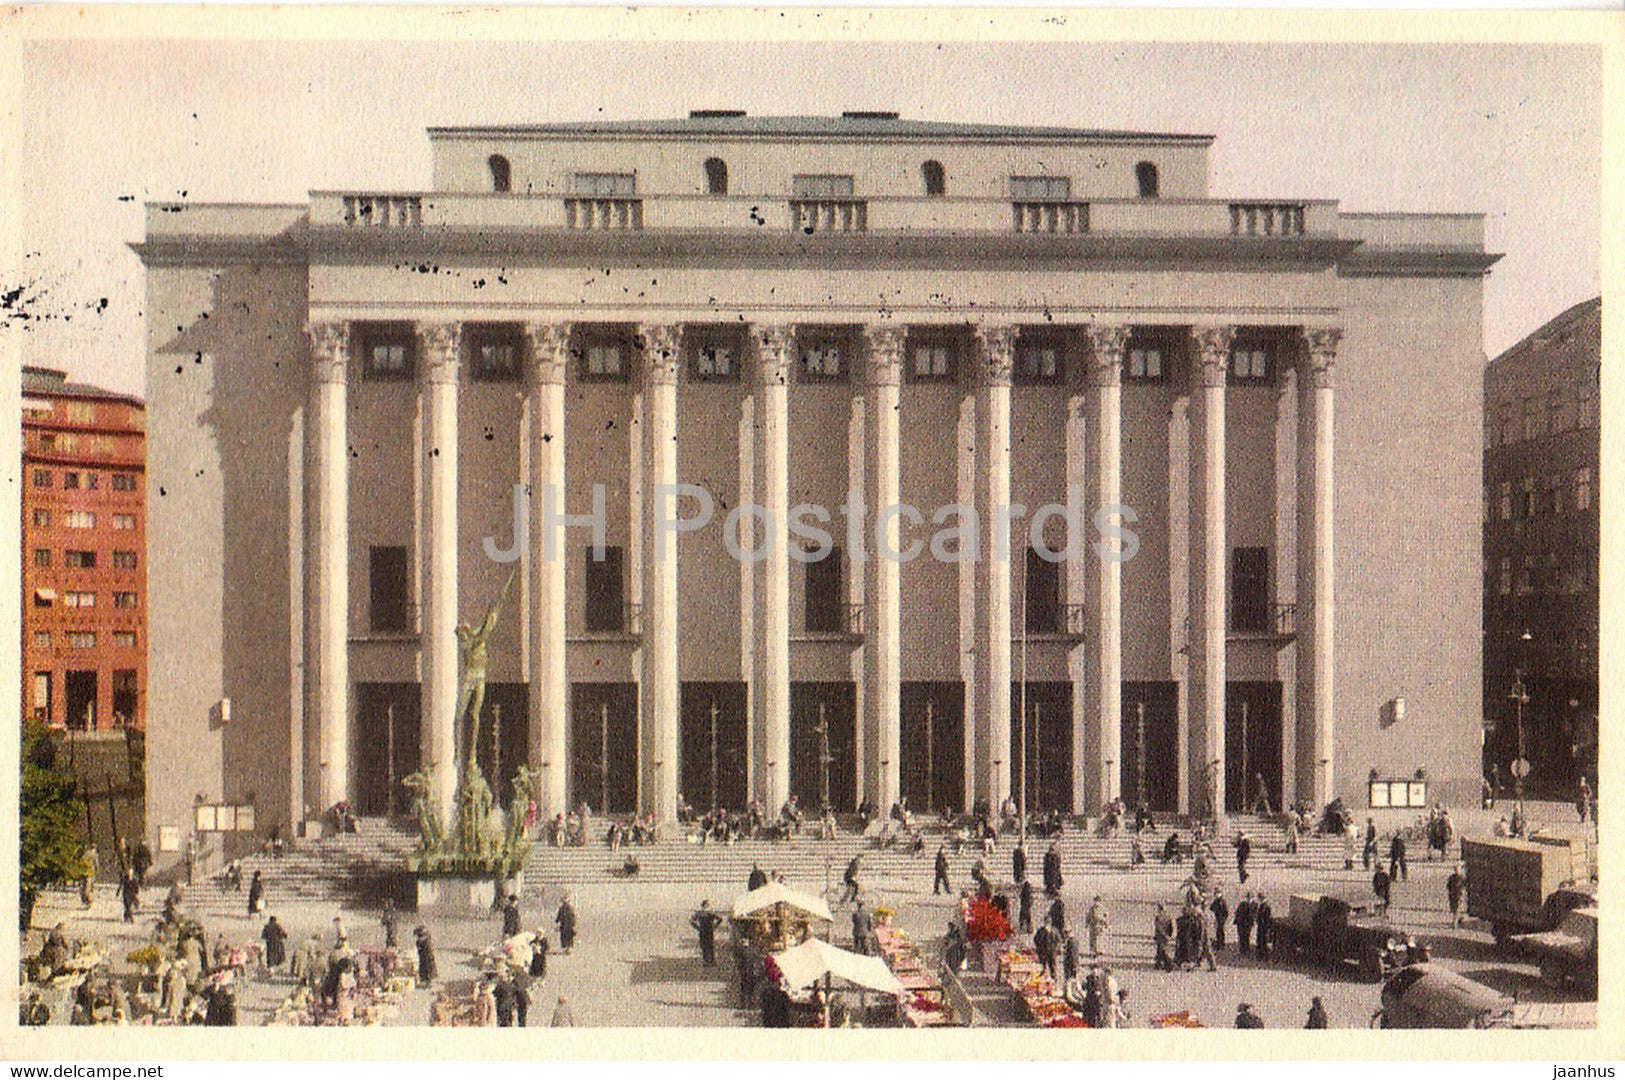 Stockholm - Konserthuset - Concert Hall - old postcard - 1937 - Sweden - used - JH Postcards